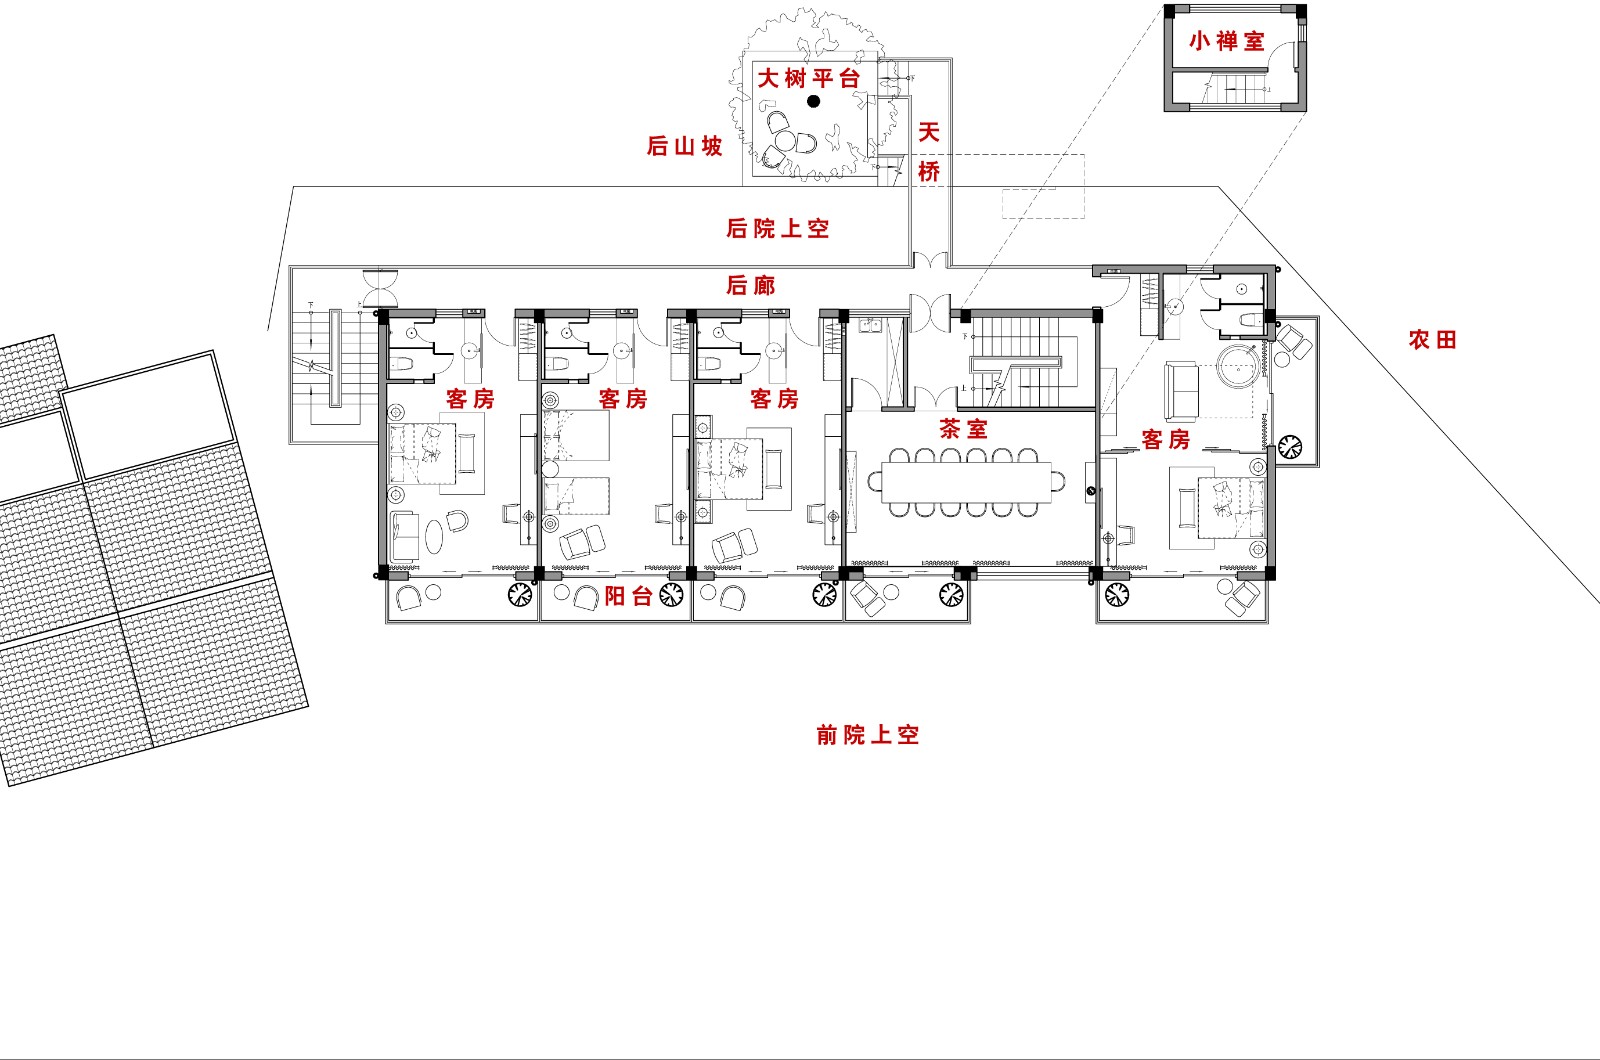 安吉七间房乡村度假酒店建筑景观室内一体化设计 / 上海善祥建筑设计有限公司